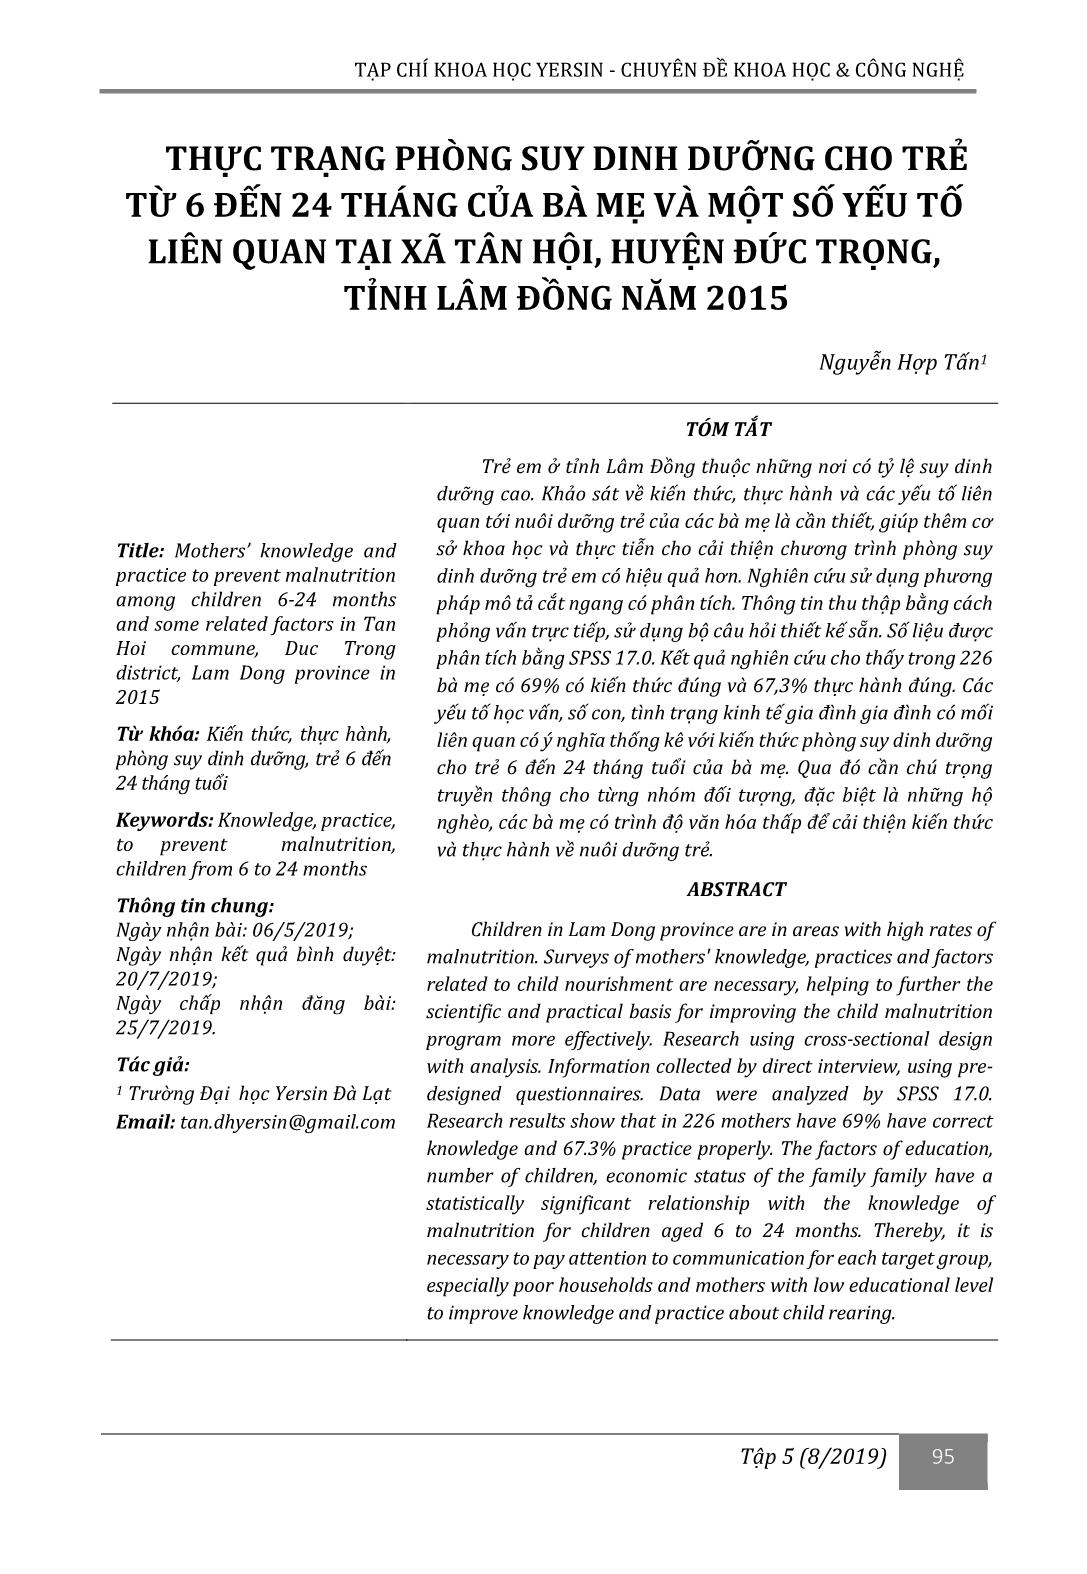 Thực trạng phòng suy dinh dưỡng cho trẻ từ 6 đến 24 tháng của bà mẹ và một số yếu tố liên quan tại xã Tân Hội, huyện Đức Trọng, tỉnh Lâm Đồng năm 2015 trang 1